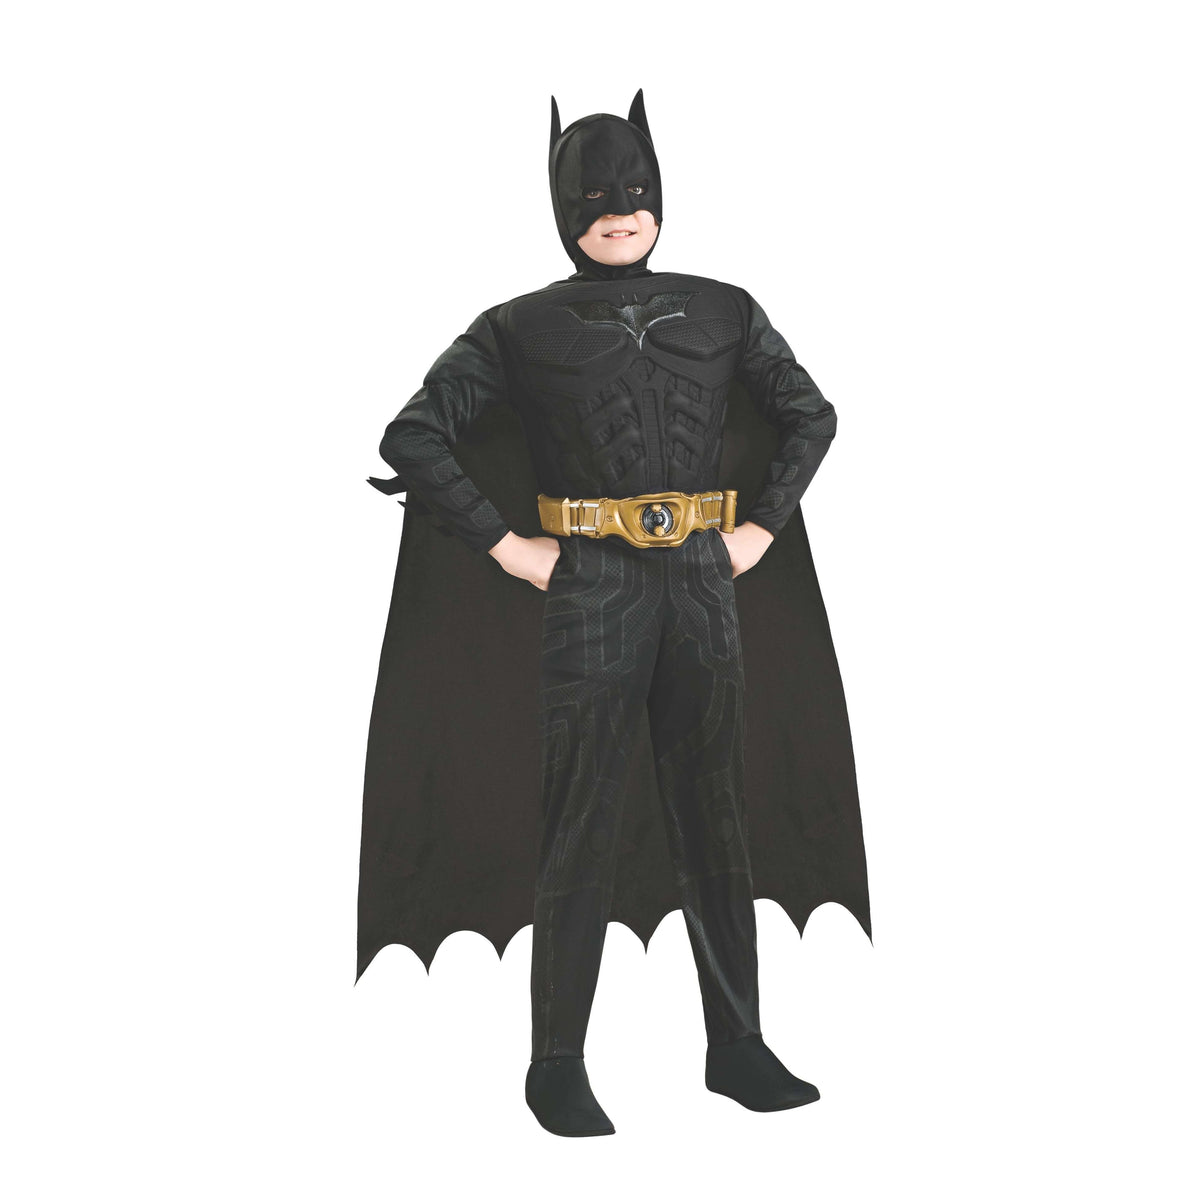 The Dark Knight Batman Deluxe Child Costume